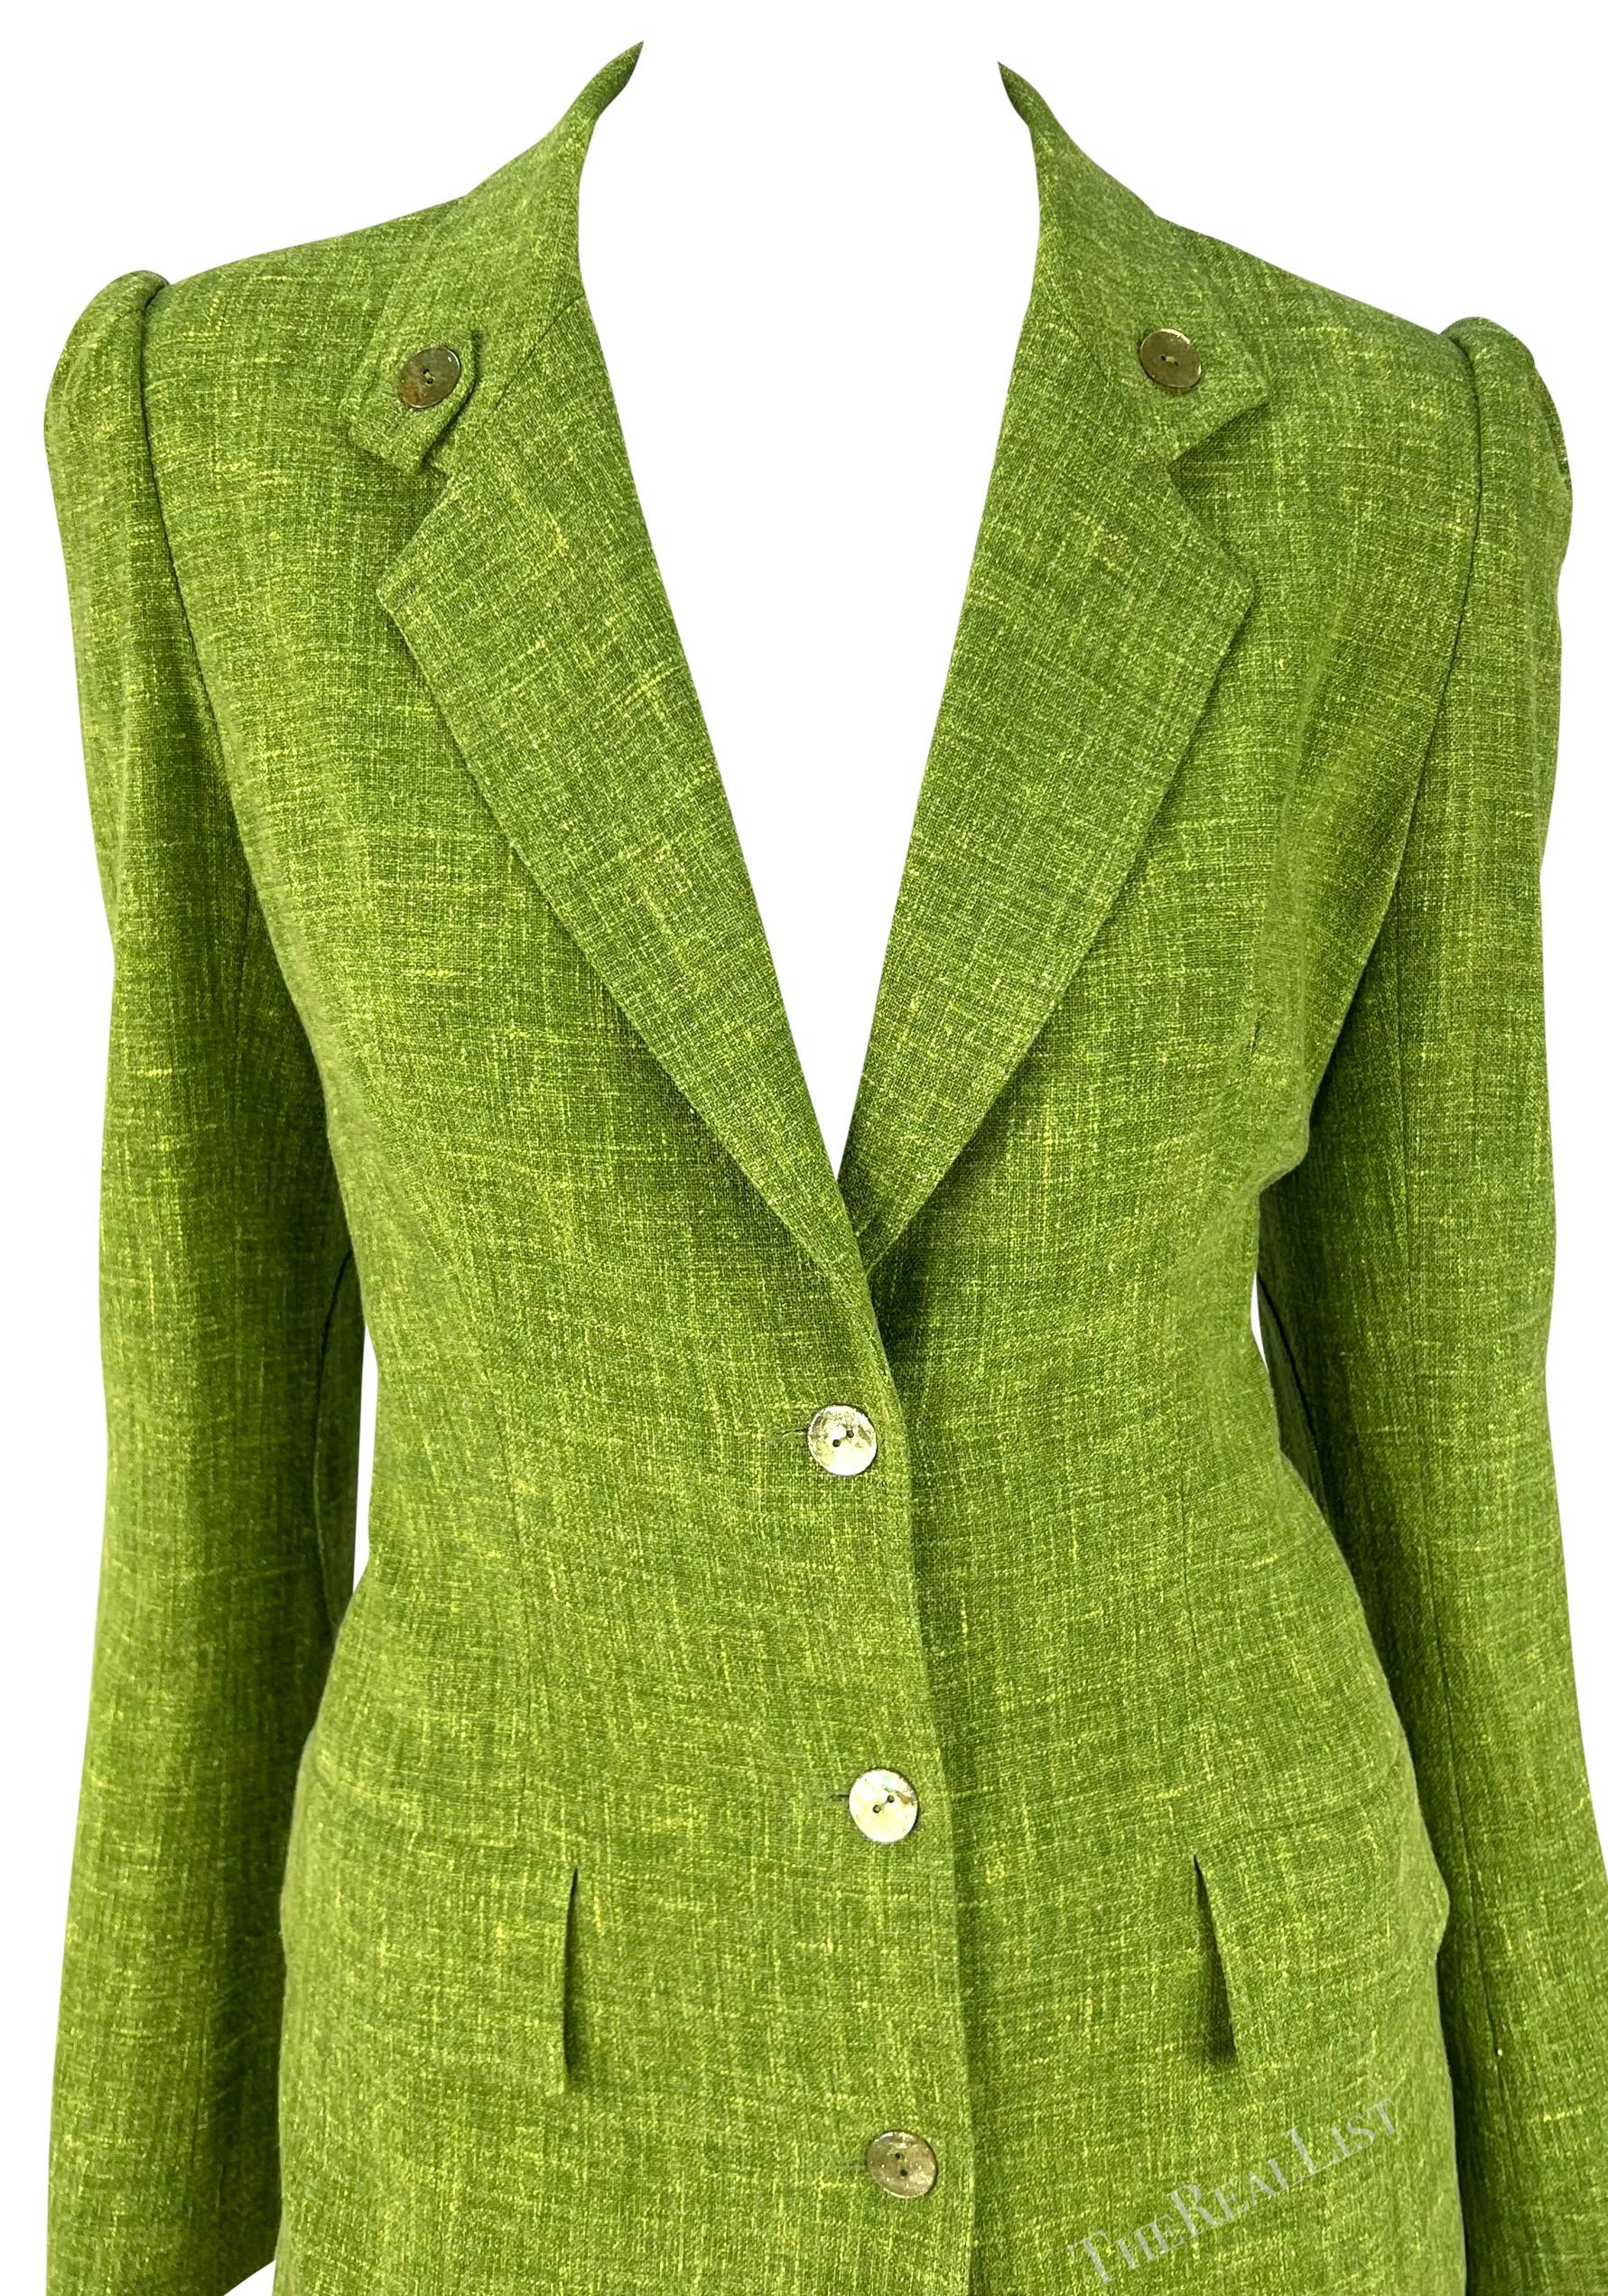 Présentation d'un costume chic en lin vert clair Christian Dior, dessiné par John Galliano. Issu de la collection printemps/été 2002, ce tailleur se compose d'un blazer et d'une jupe crayon assortie. La veste blazer est dotée d'une épaule en corde,